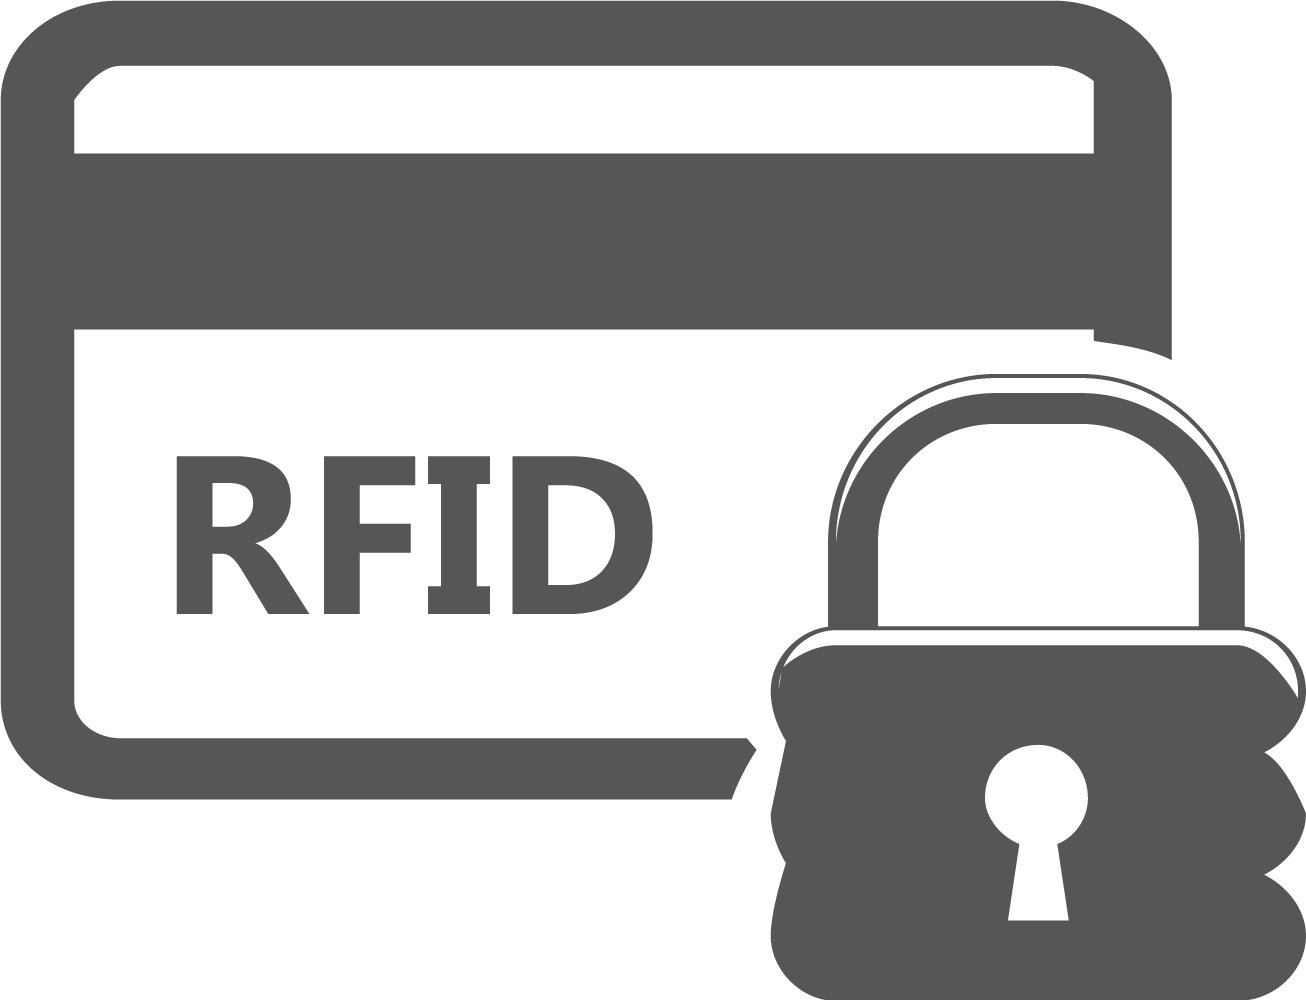 RFID-Schutzhüllen für Karten, Ausweise, Pässe, Handys u. mehr